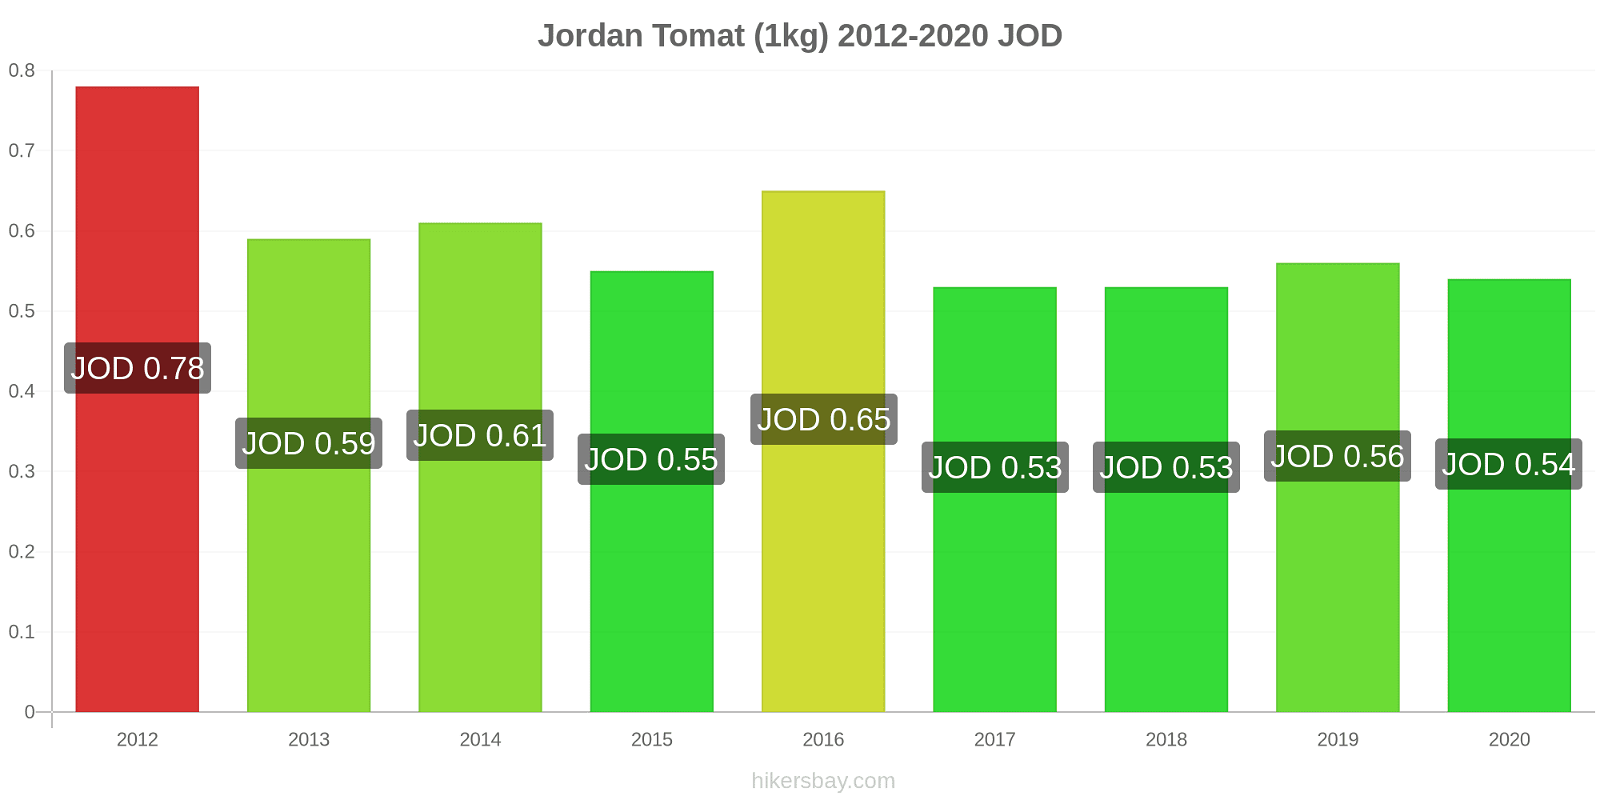 Jordan prisendringer Tomat (1kg) hikersbay.com